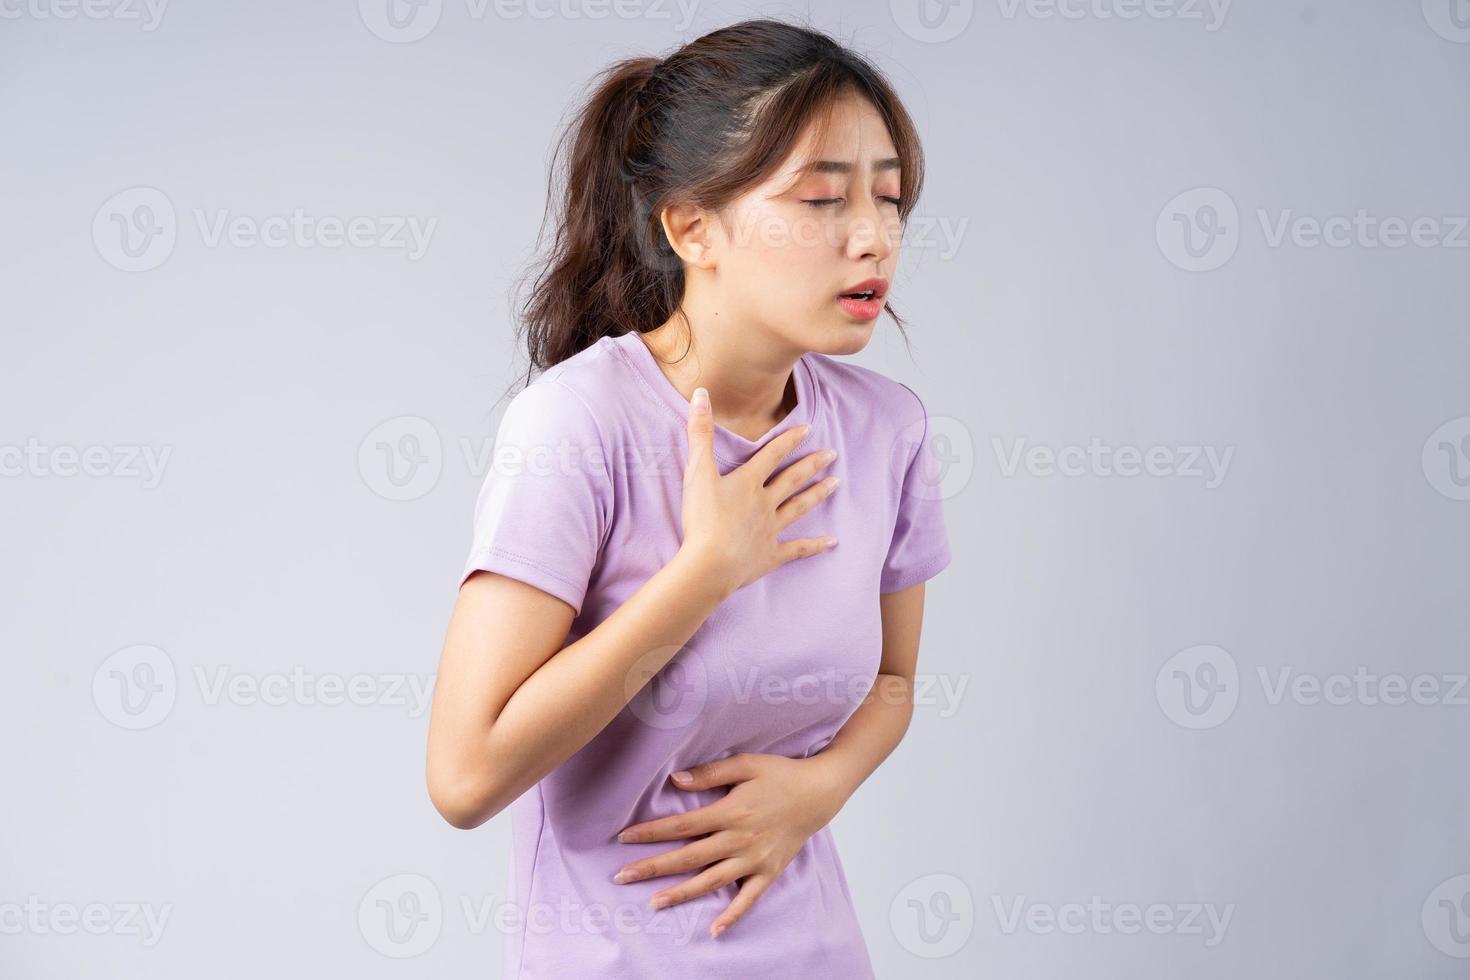 jeune femme asiatique souffrant de reflux gastro-œsophagien photo